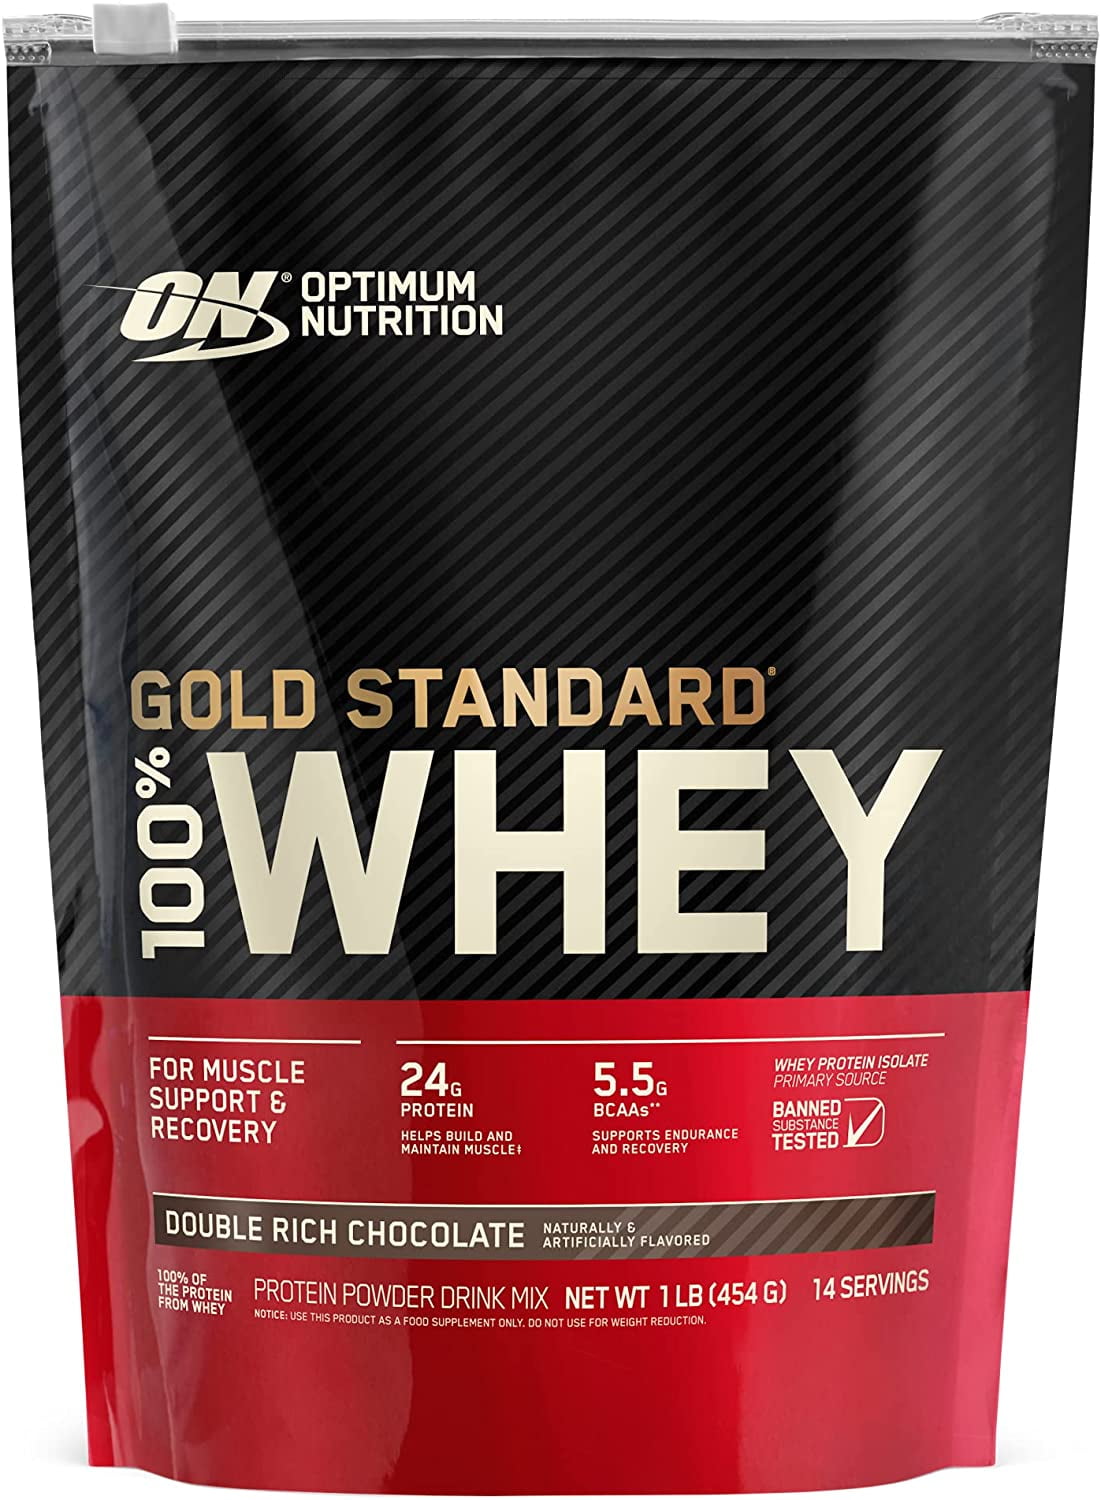 Optimum Nutrition Gold Standard 100 Whey Protein Powder 24g Protein